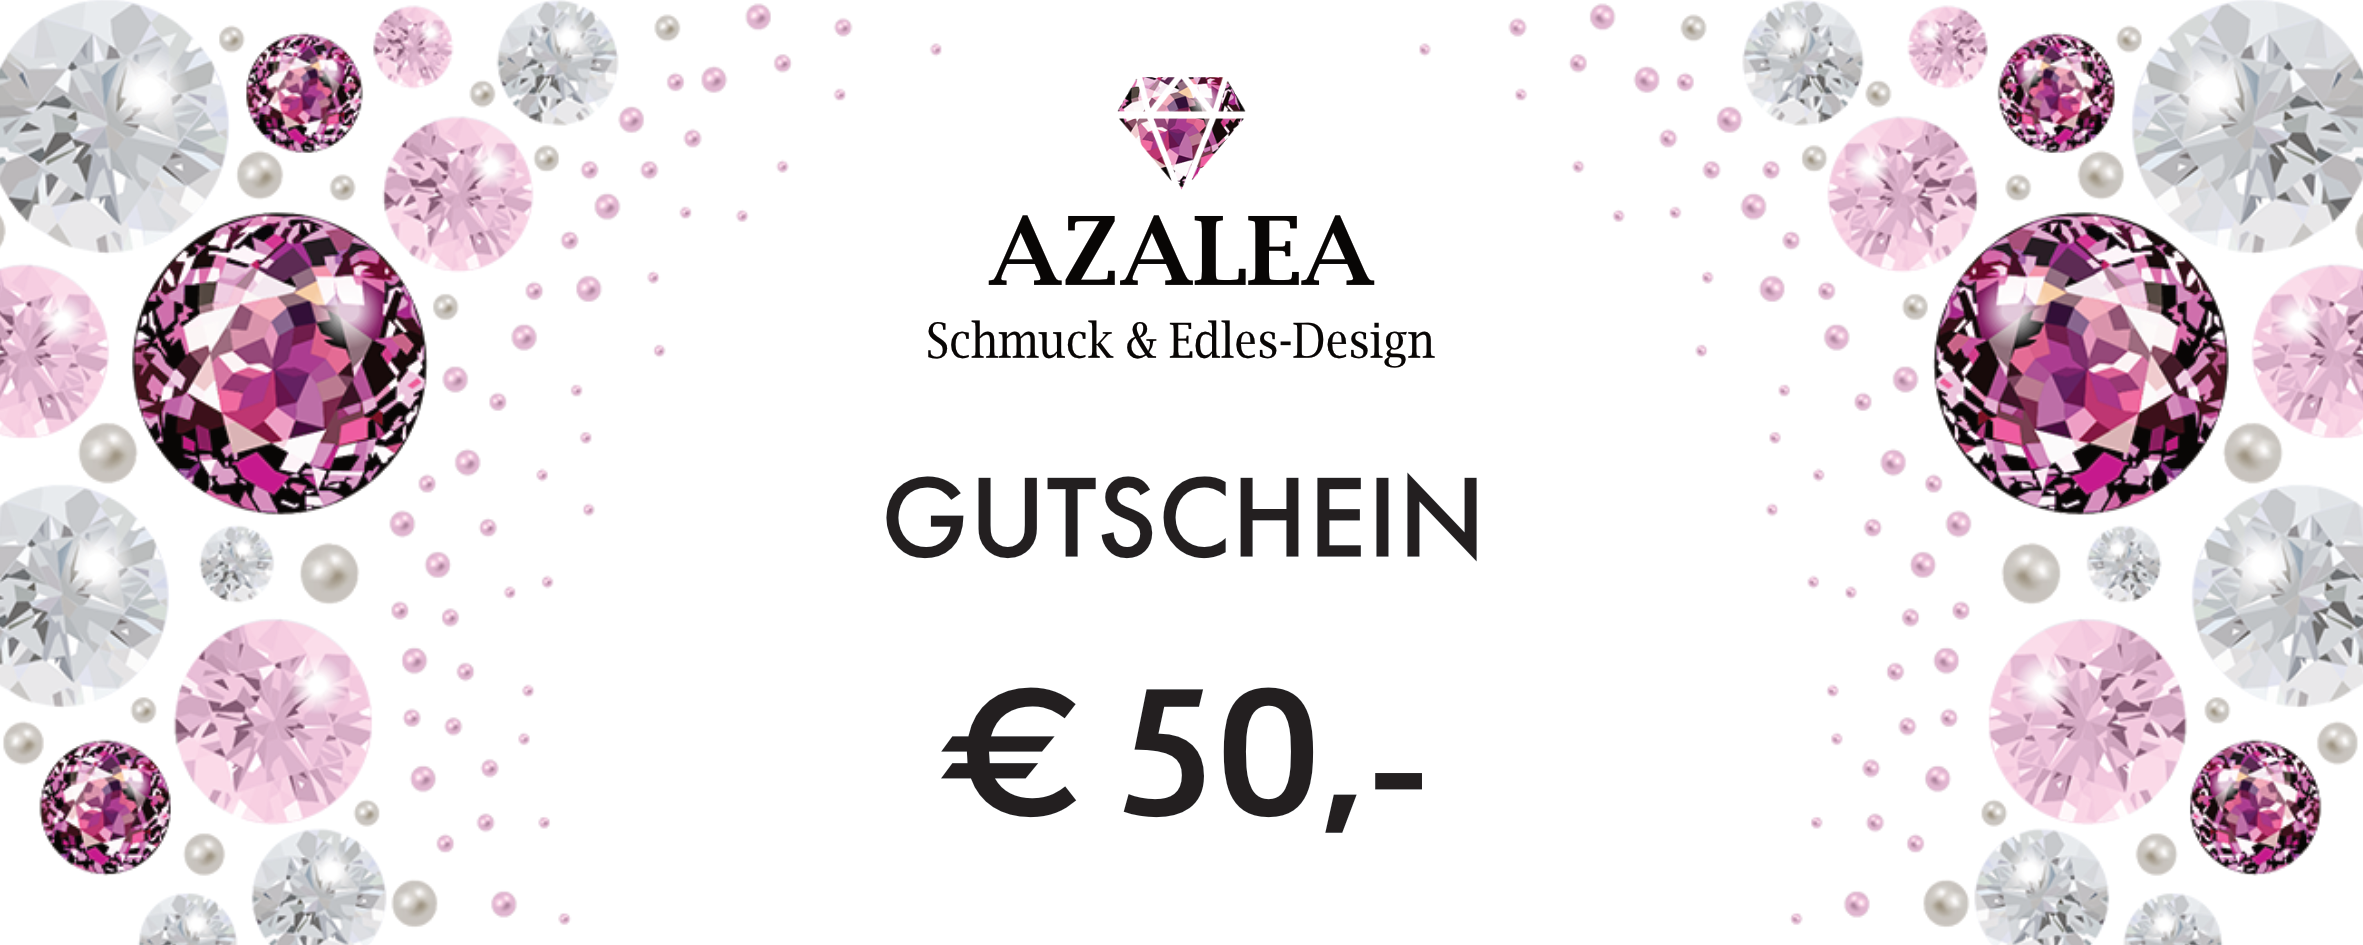 Azalea Wien - Schmuck und Edelsteine - Gutschein